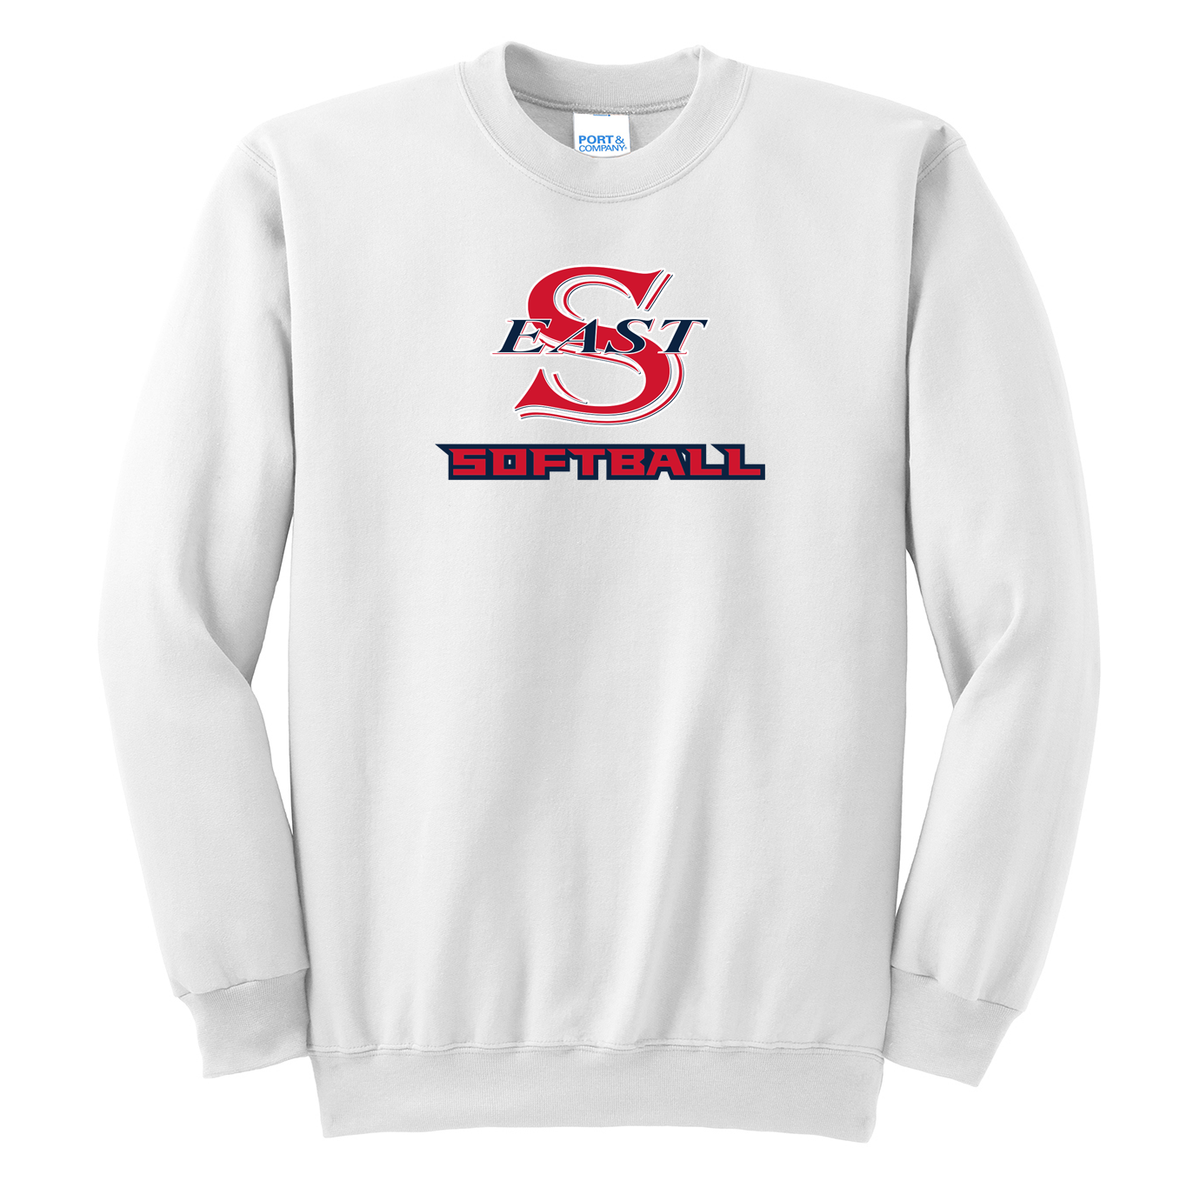 Smithtown East Softball Crew Neck Sweater